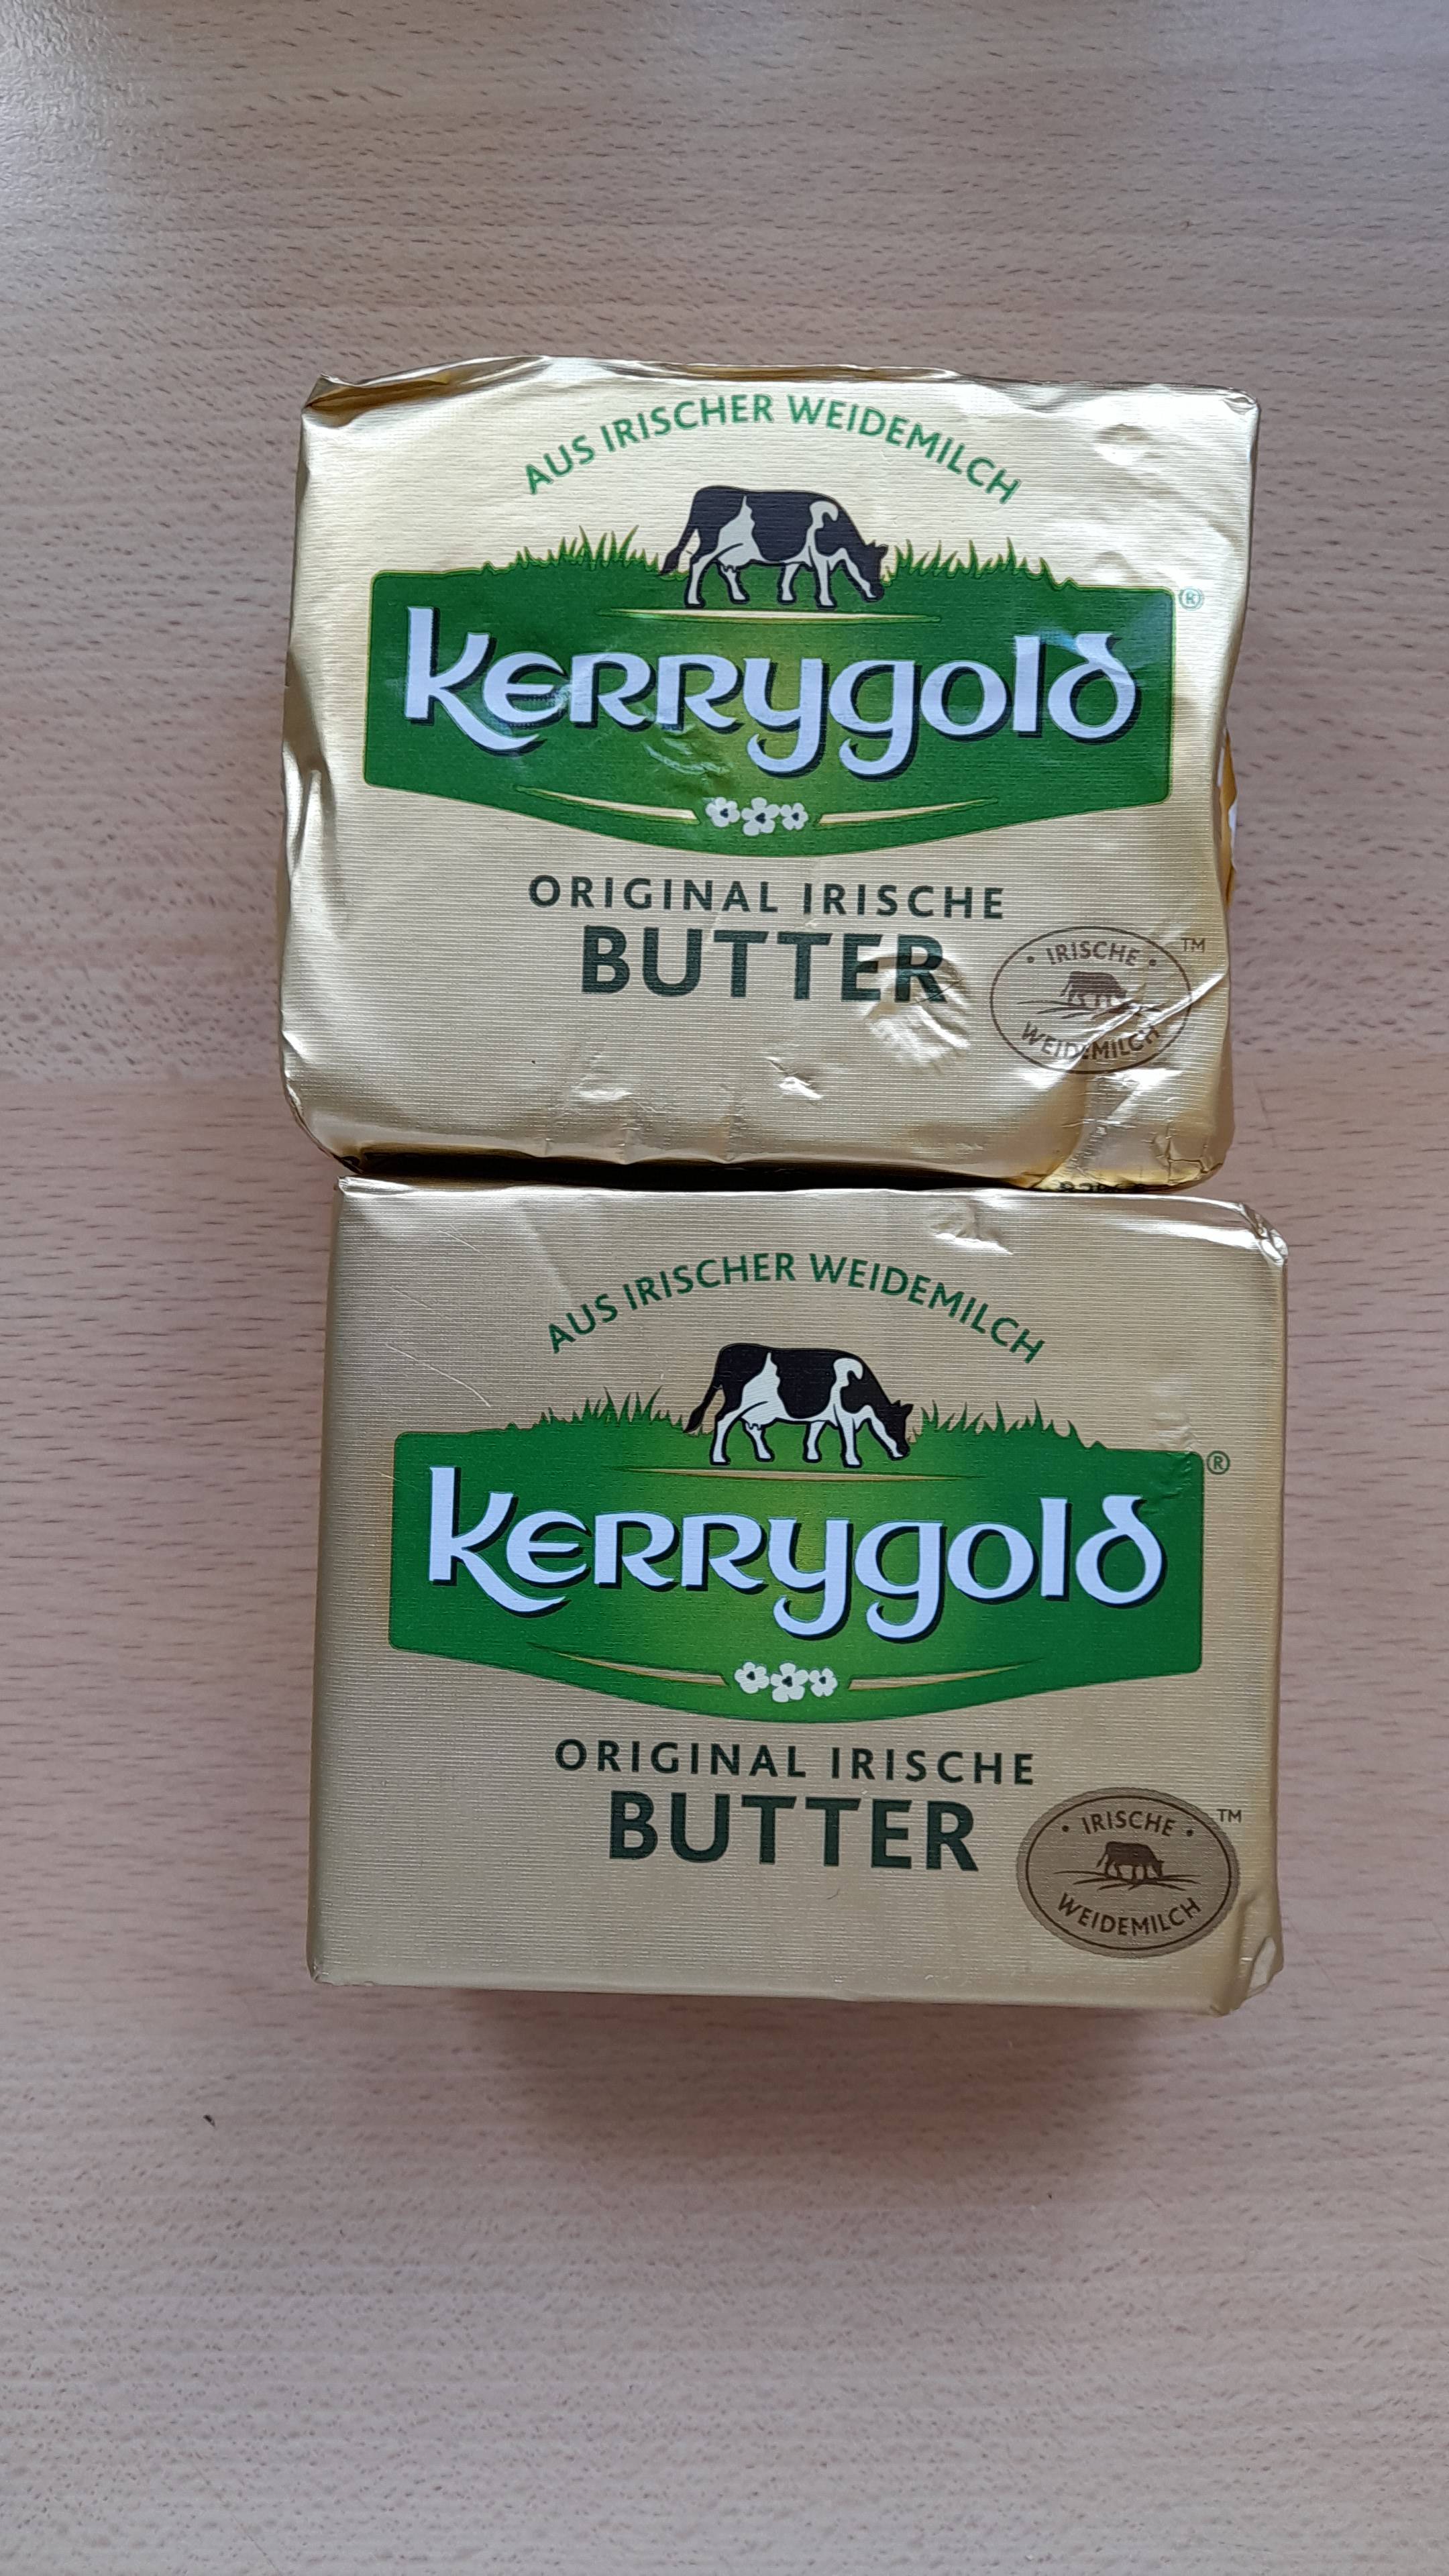 Dieses Paket Irische Butter kostet im Kaufland bereits 2,69 €. Da hatte ich ja Glück, dass ich sie bei Penny für 1,49 € bekommen habe.